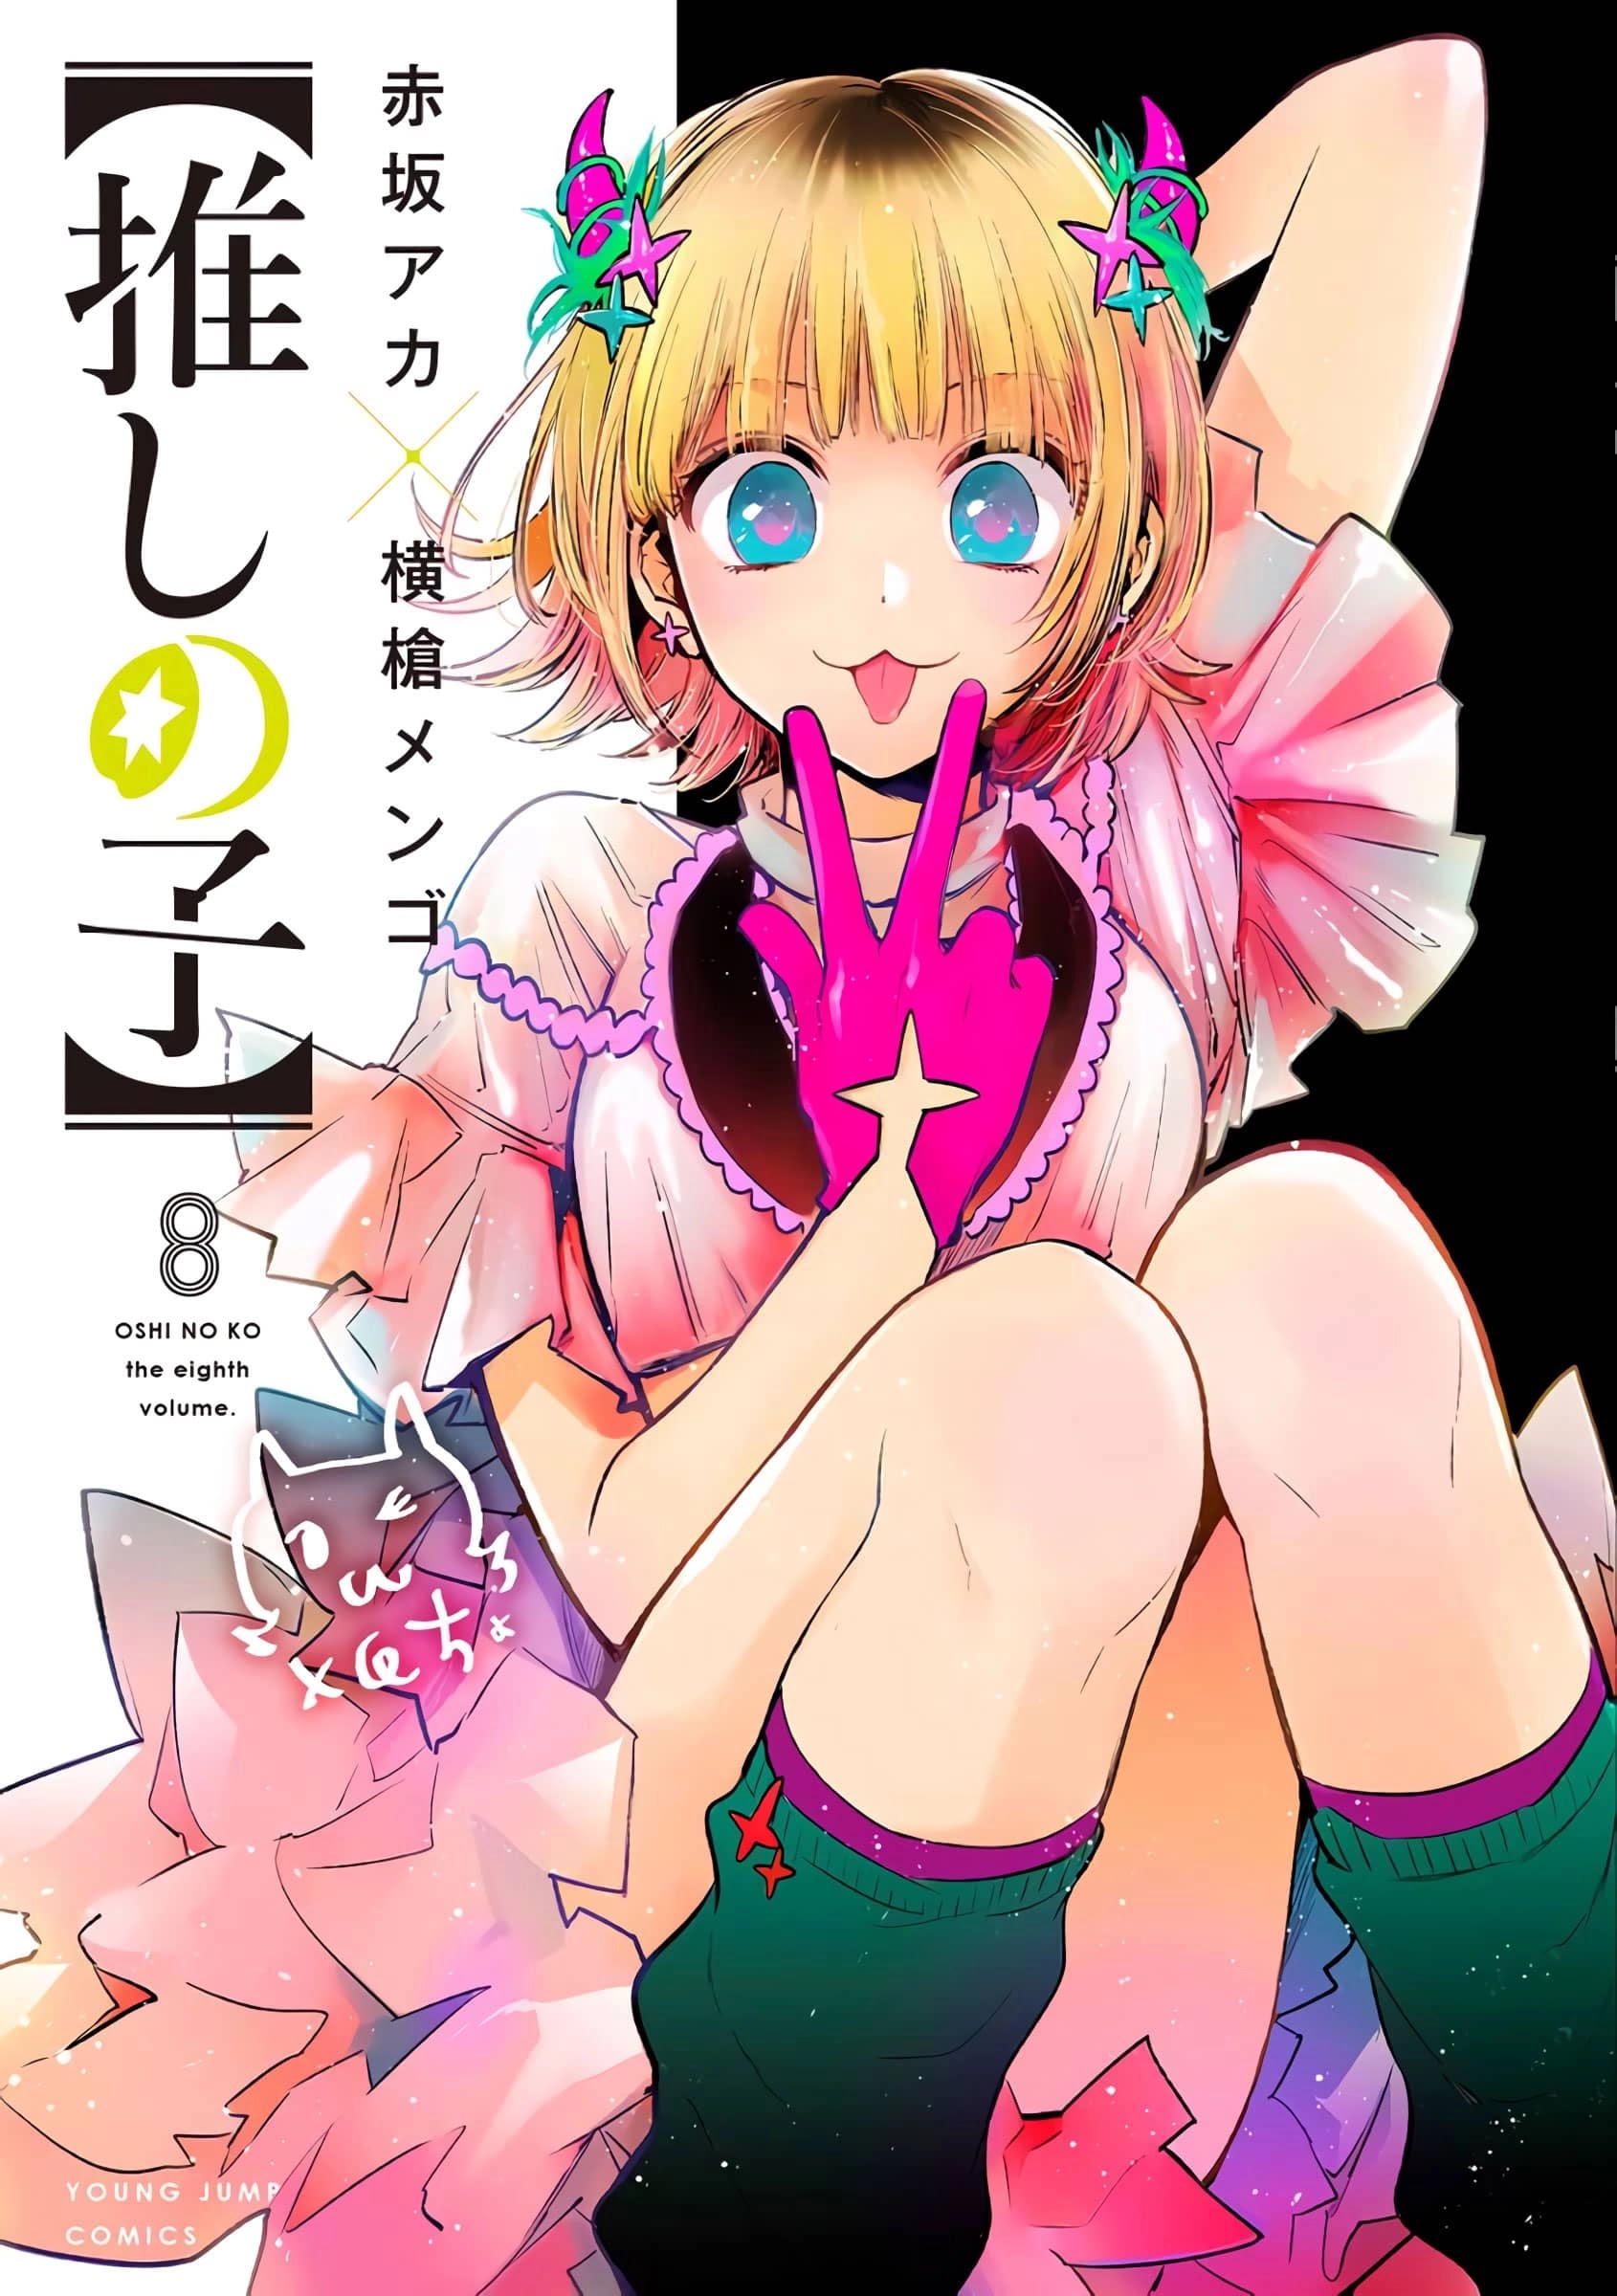 El manga Oshi no Ko revelo la portada de su volumen #8